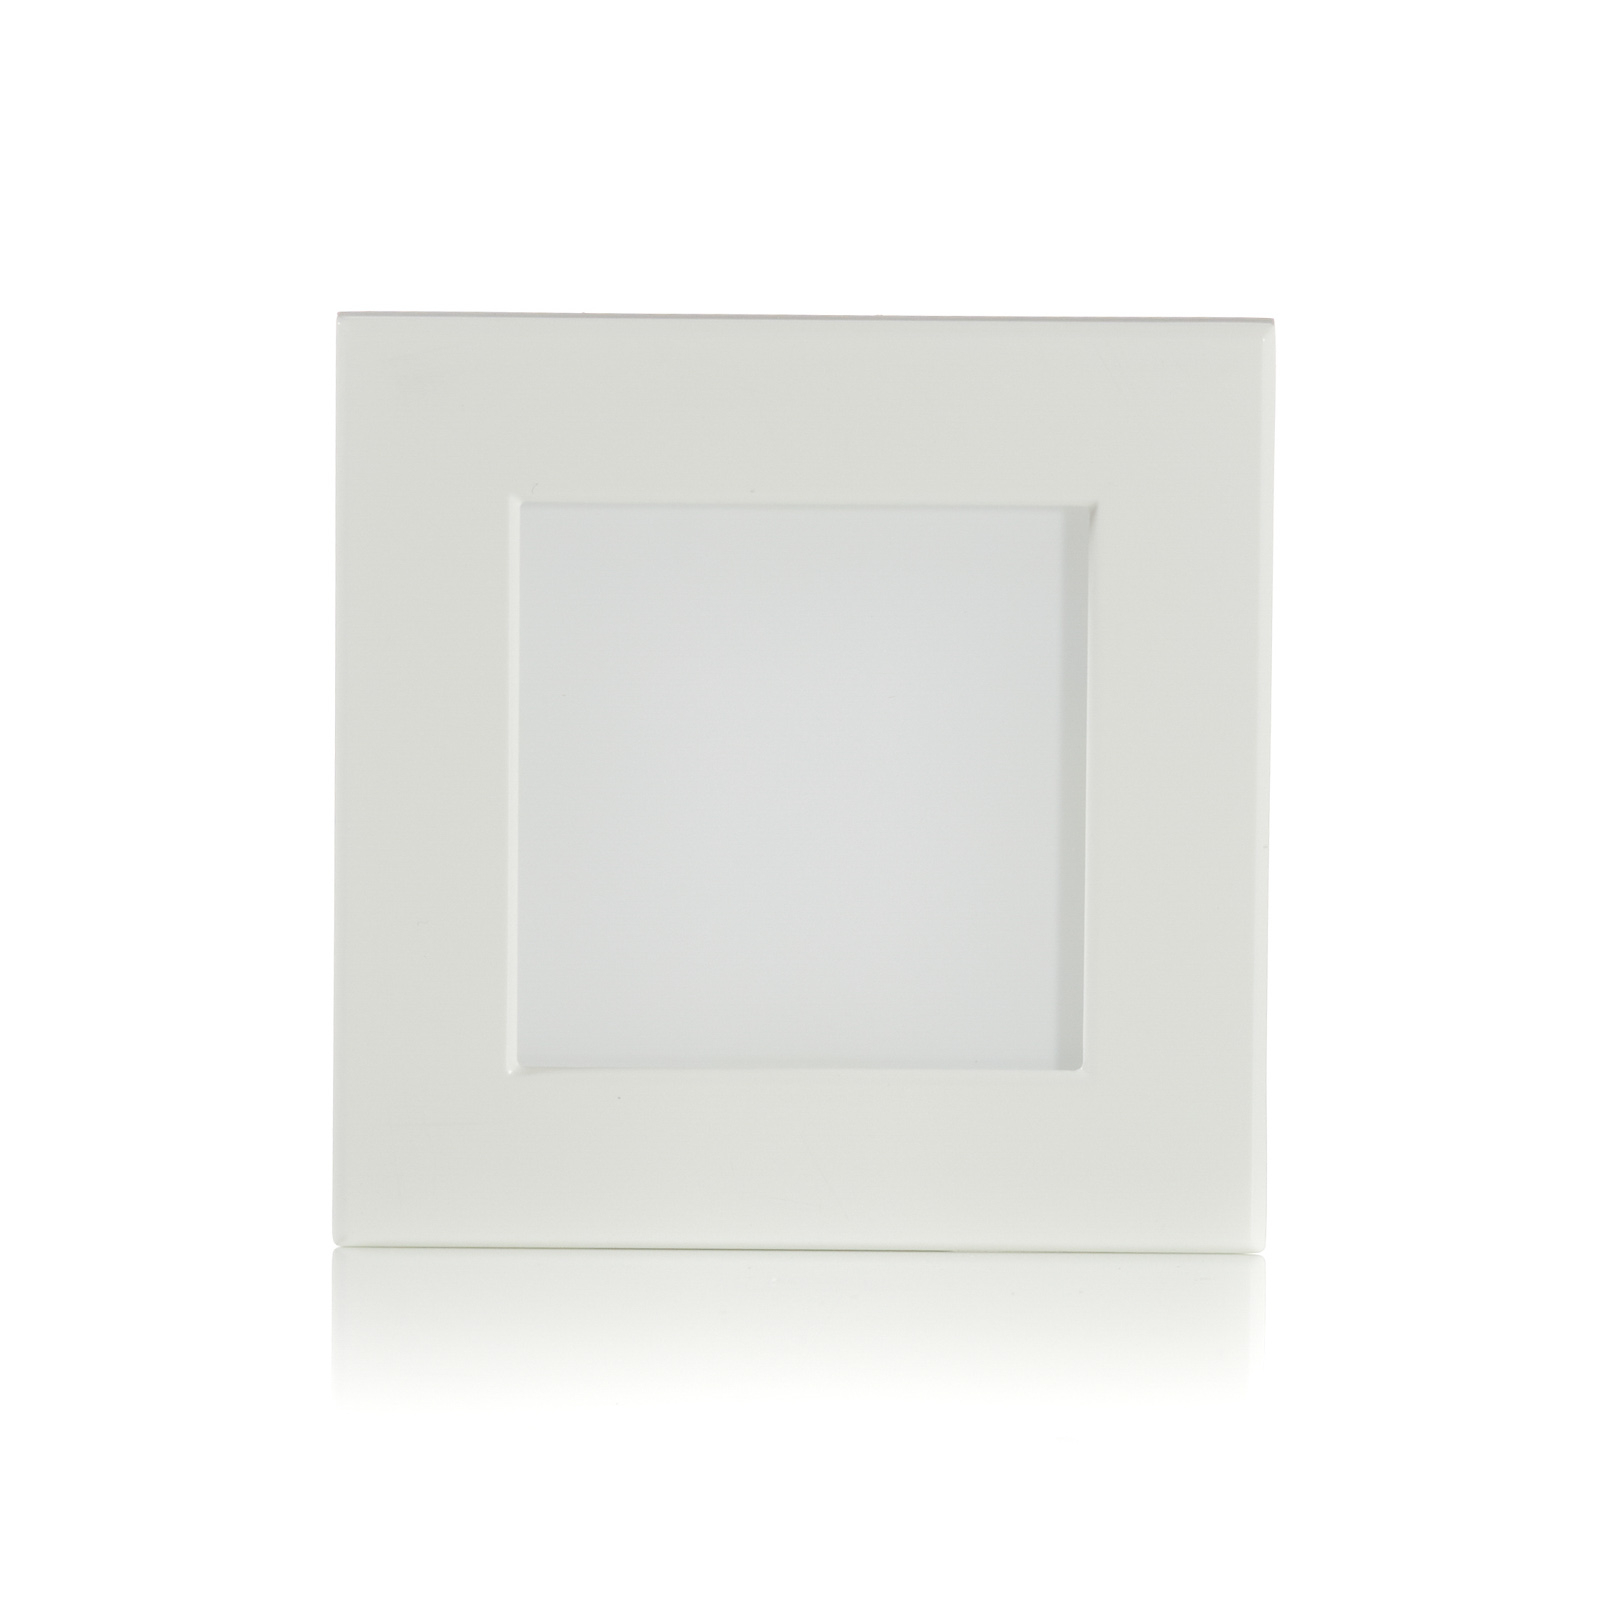 BEGA Accenta zidna instalacija kvadratni okvir bijeli 160lm